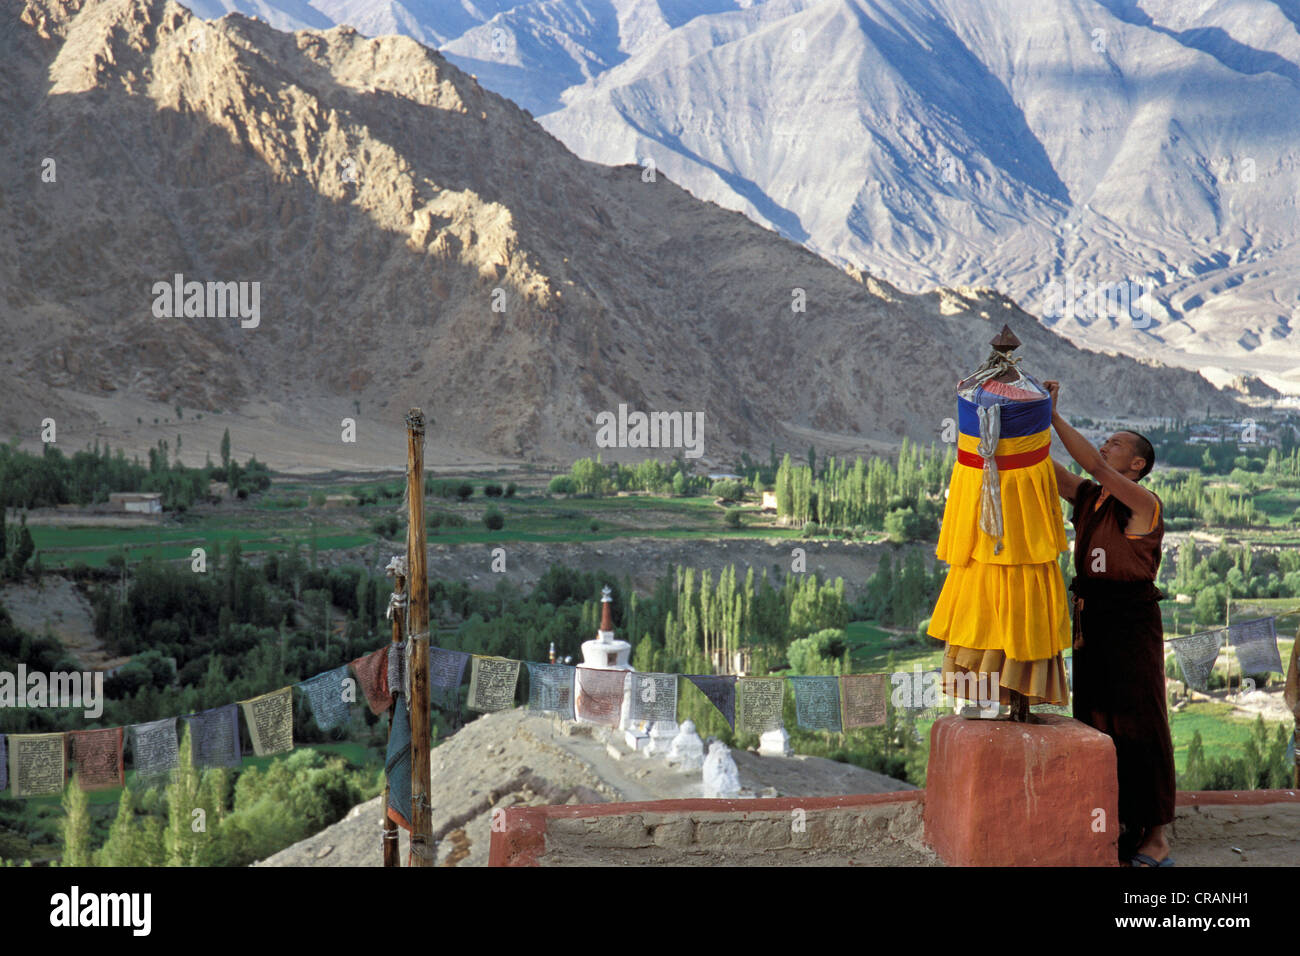 Le moine au monastère de Likir, Ladakh, le Jammu-et-Cachemire, dans le Nord de l'Inde, Indienne, Himalaya, Asie Banque D'Images